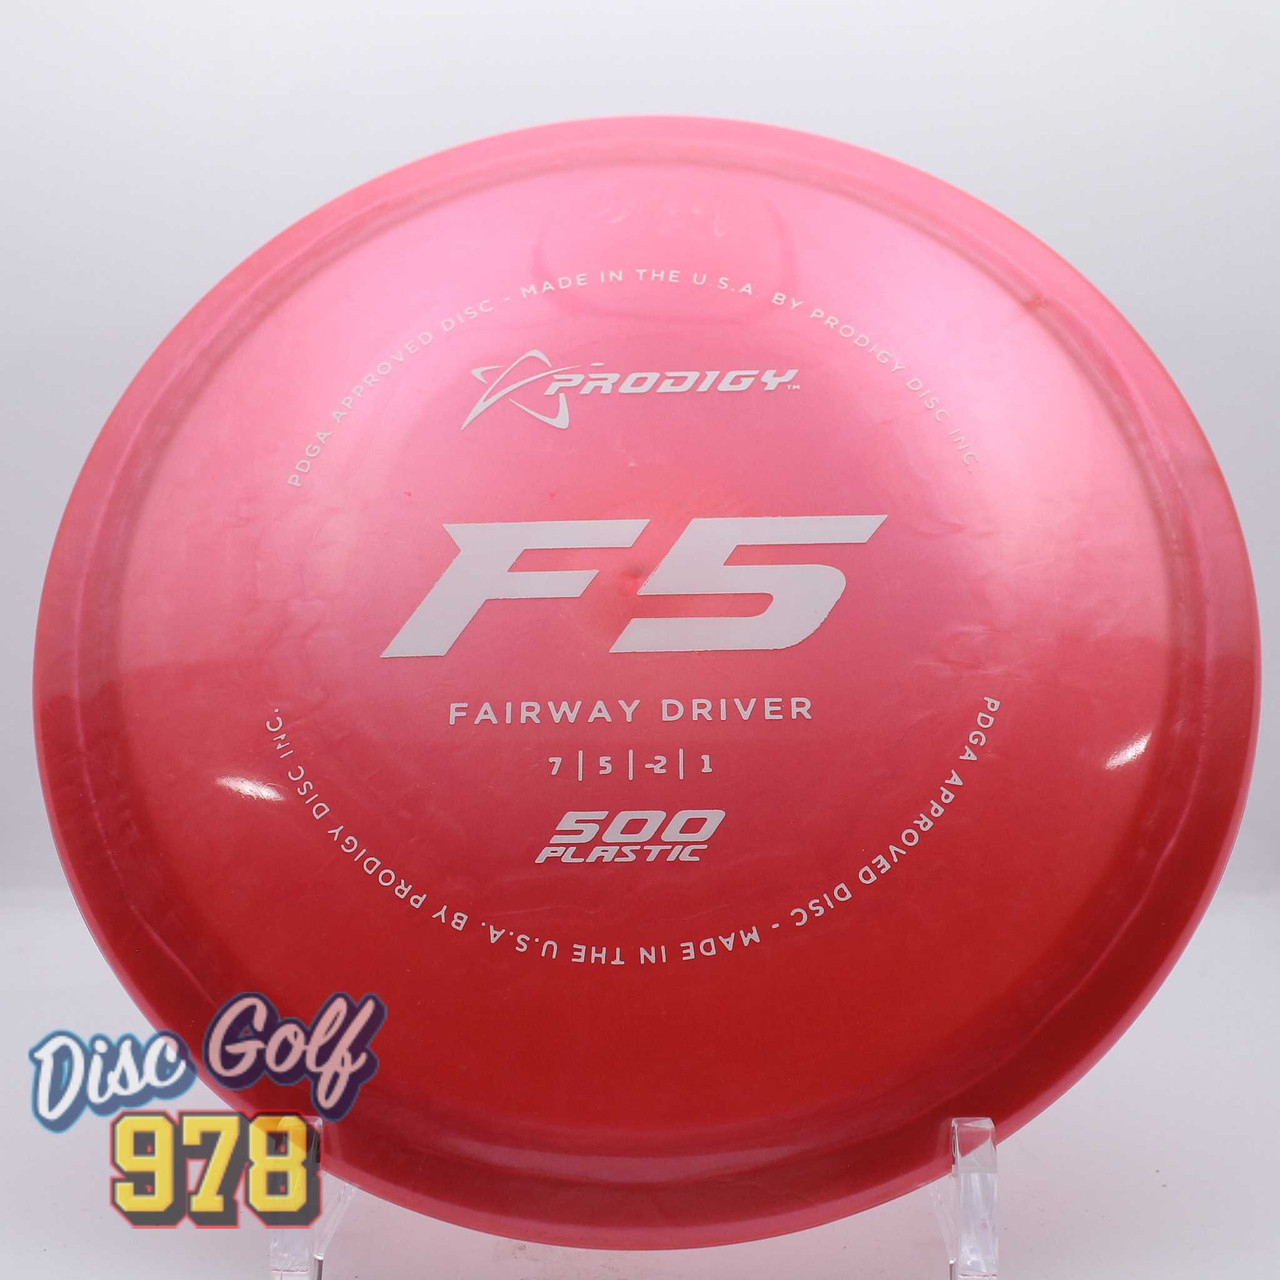 Prodigy F5 500 Pink-White 175.2g